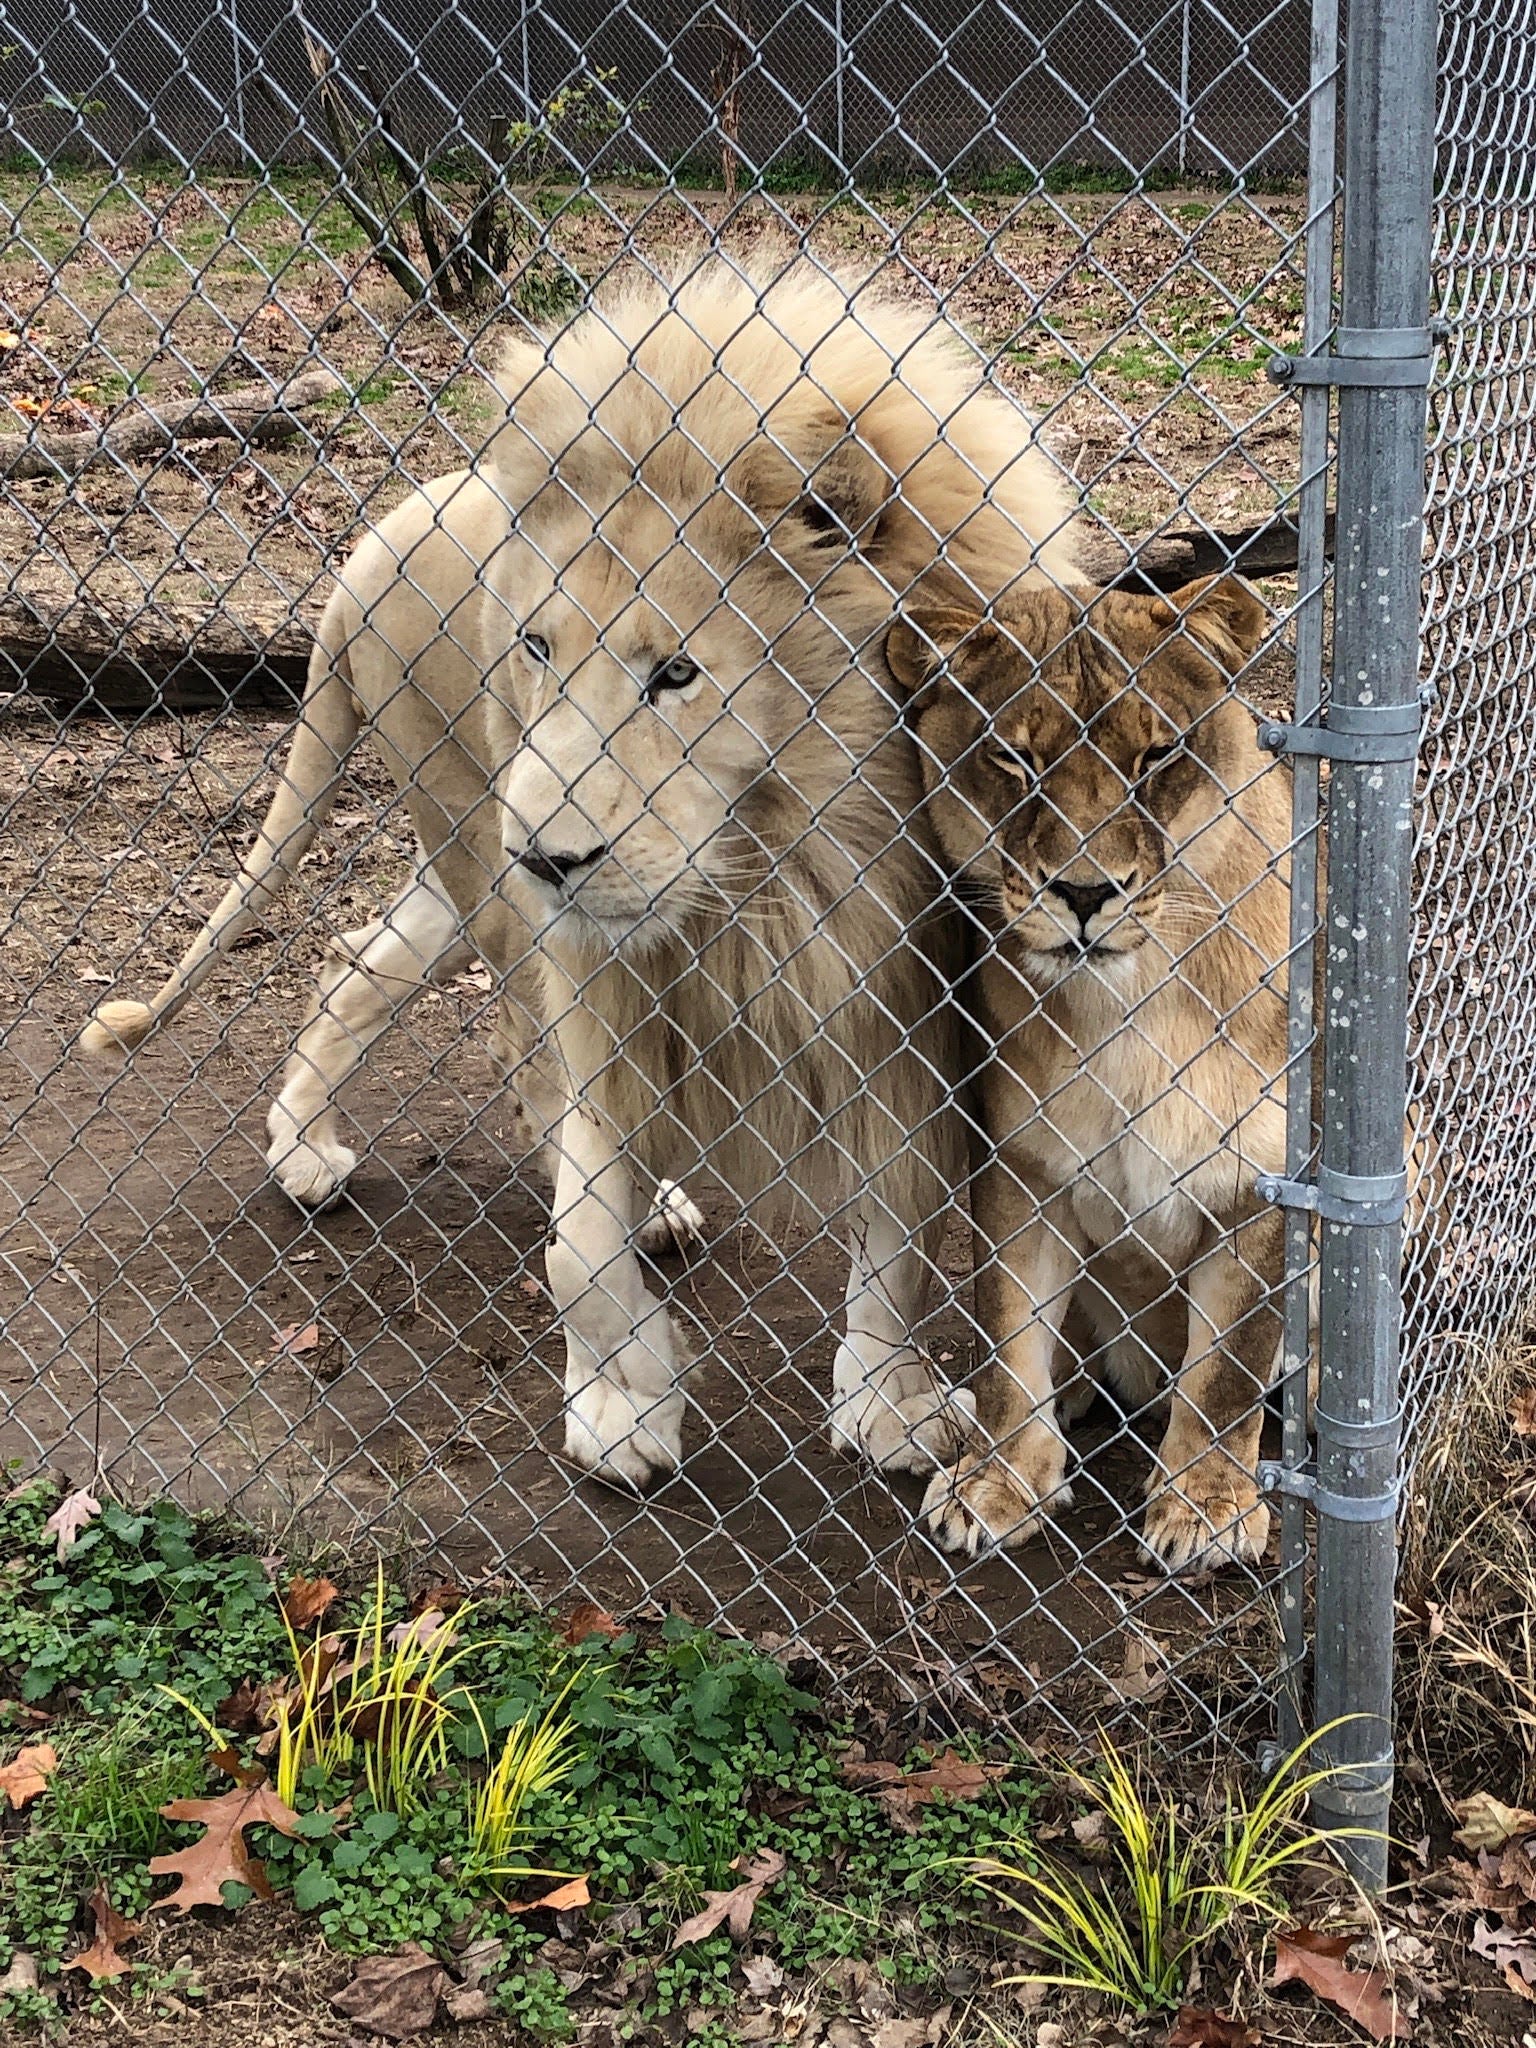 Zoos near Salisbury NC 